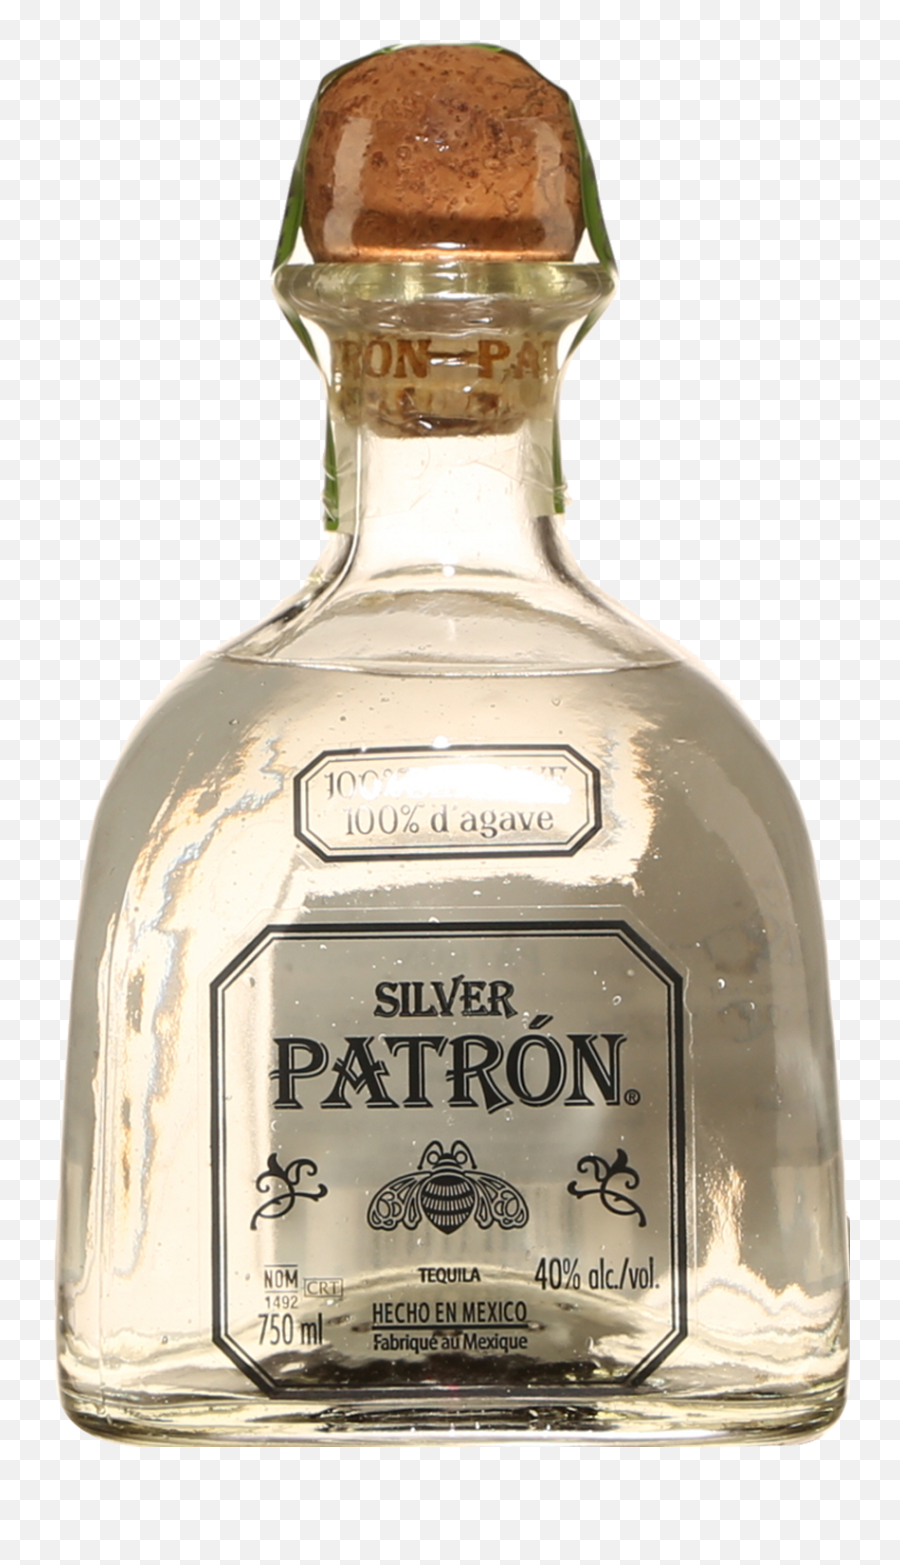 Patron Silver - Patron Saq Emoji,Patron Bottle Png